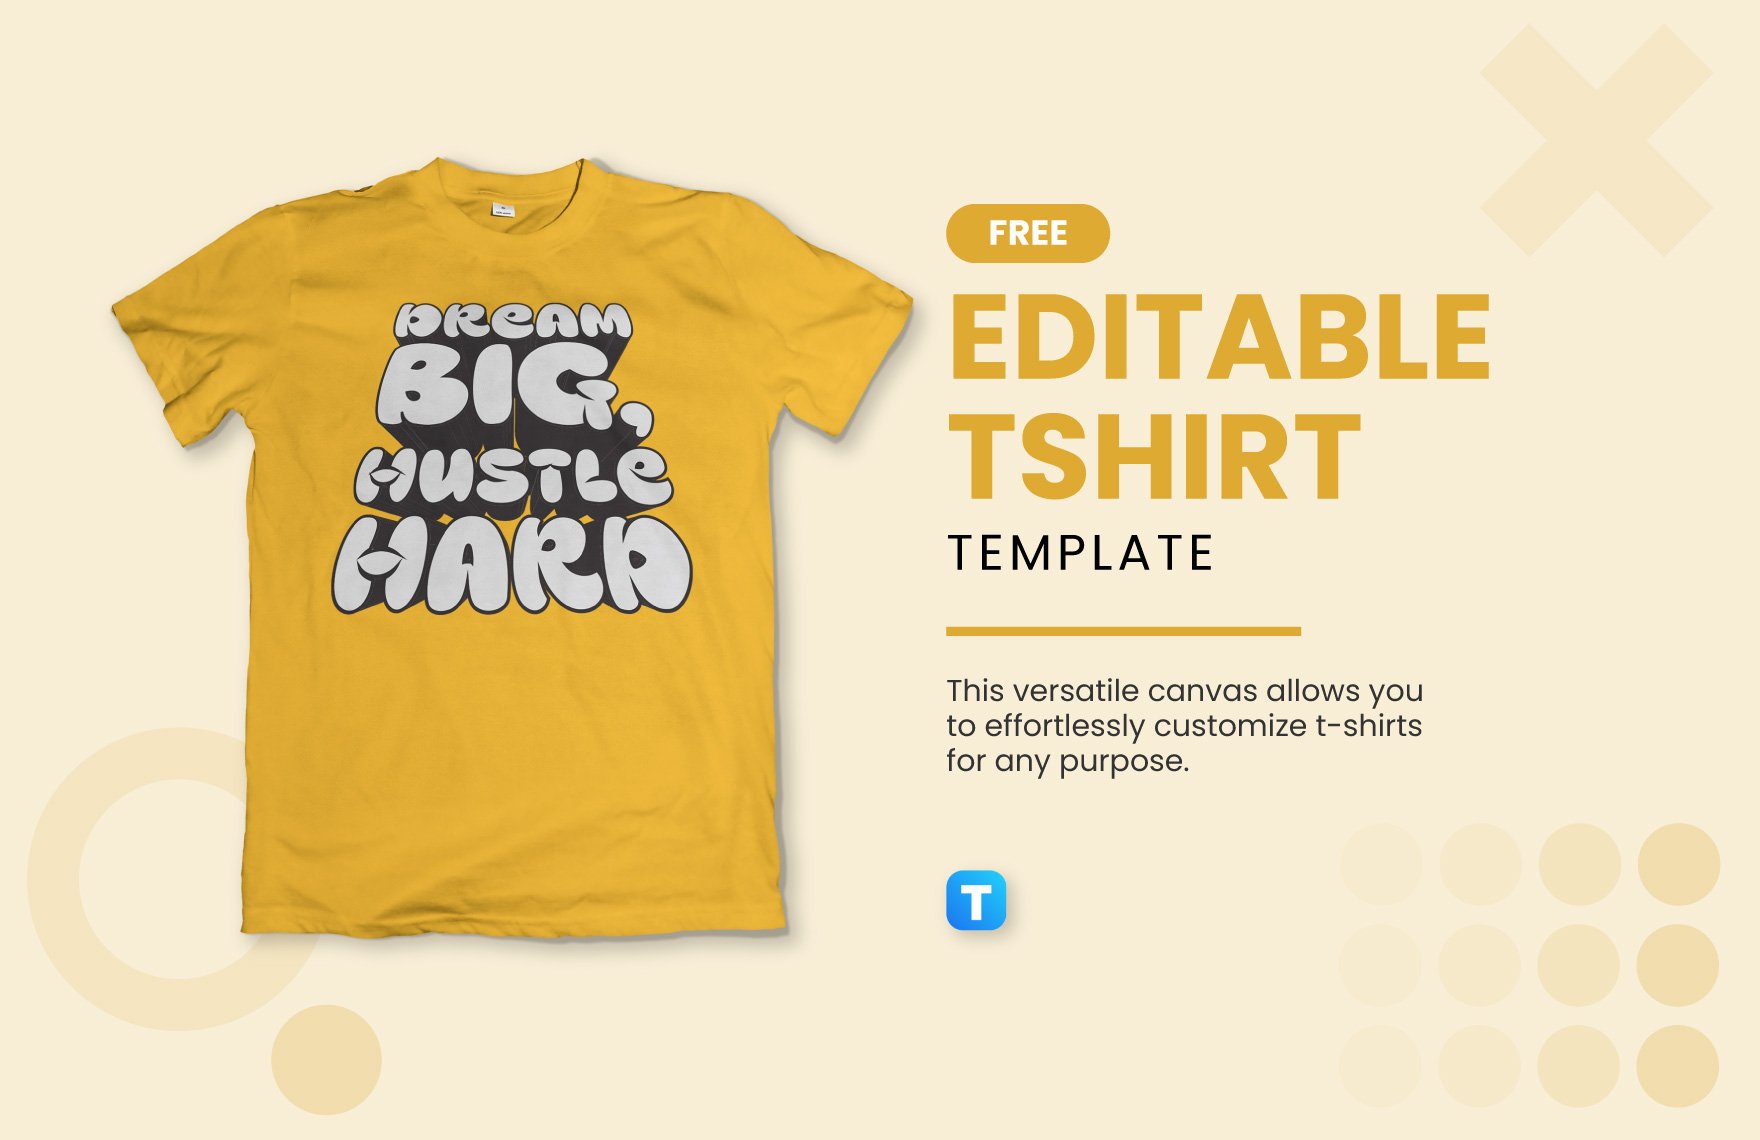 Free Editable Tshirt Template